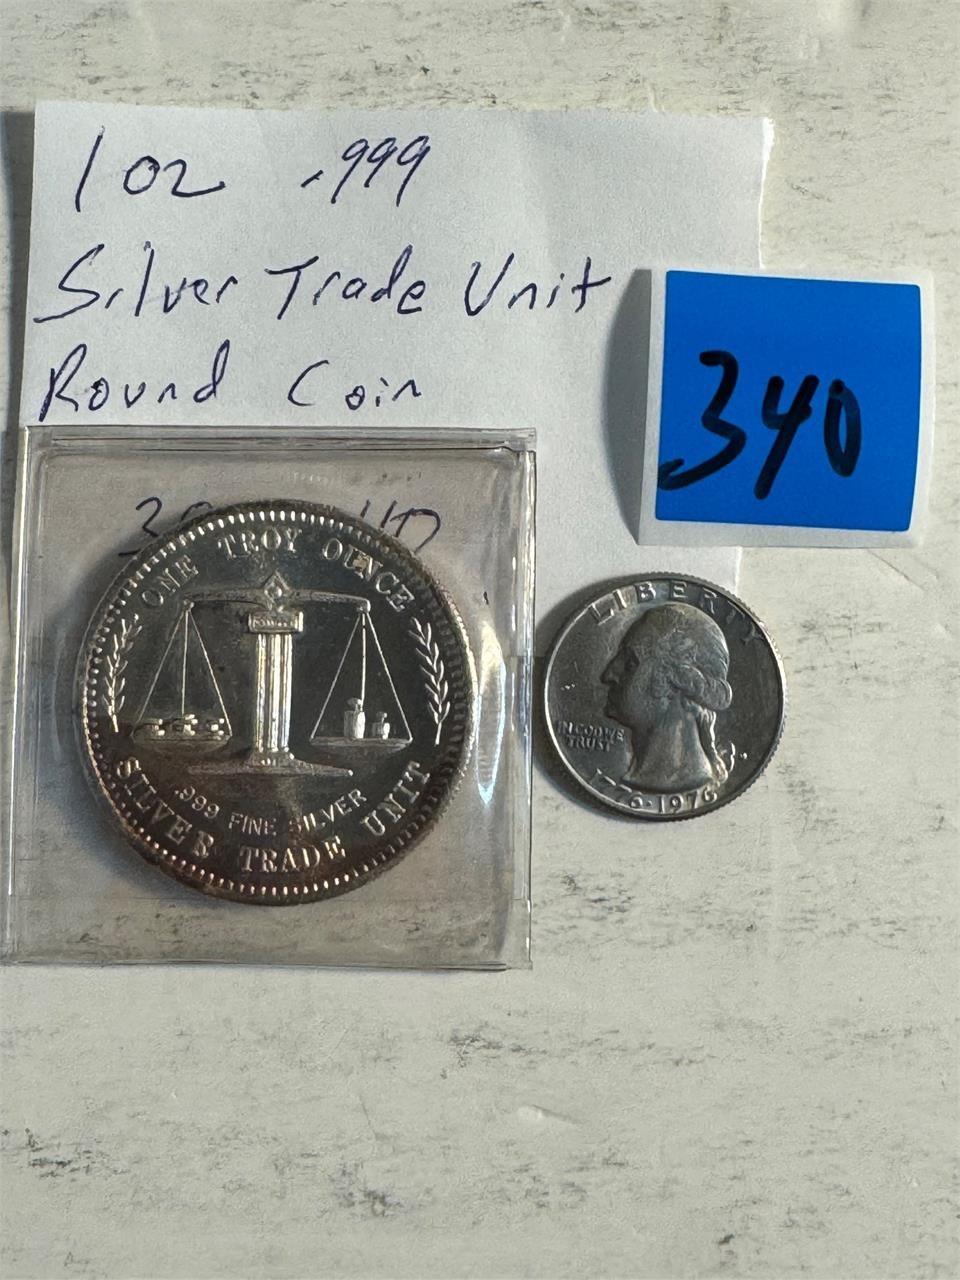 1 oz .999 Silver Trade Unit Rare / centennial .25